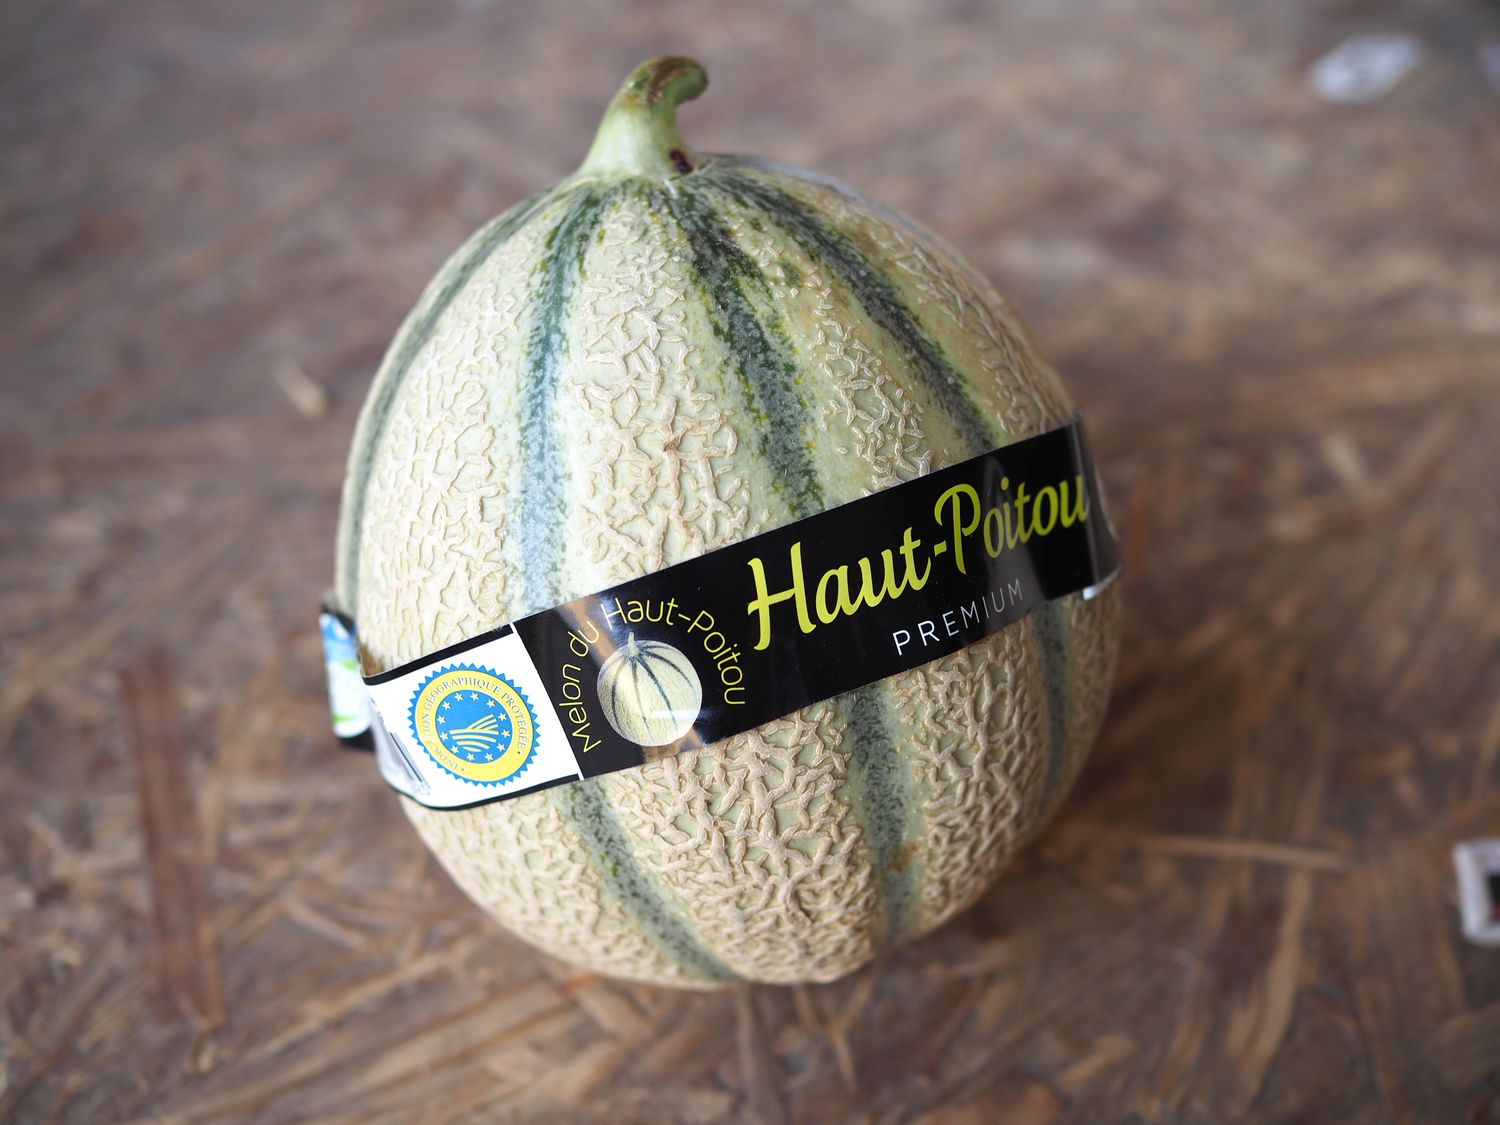 Haut-Poitou melon